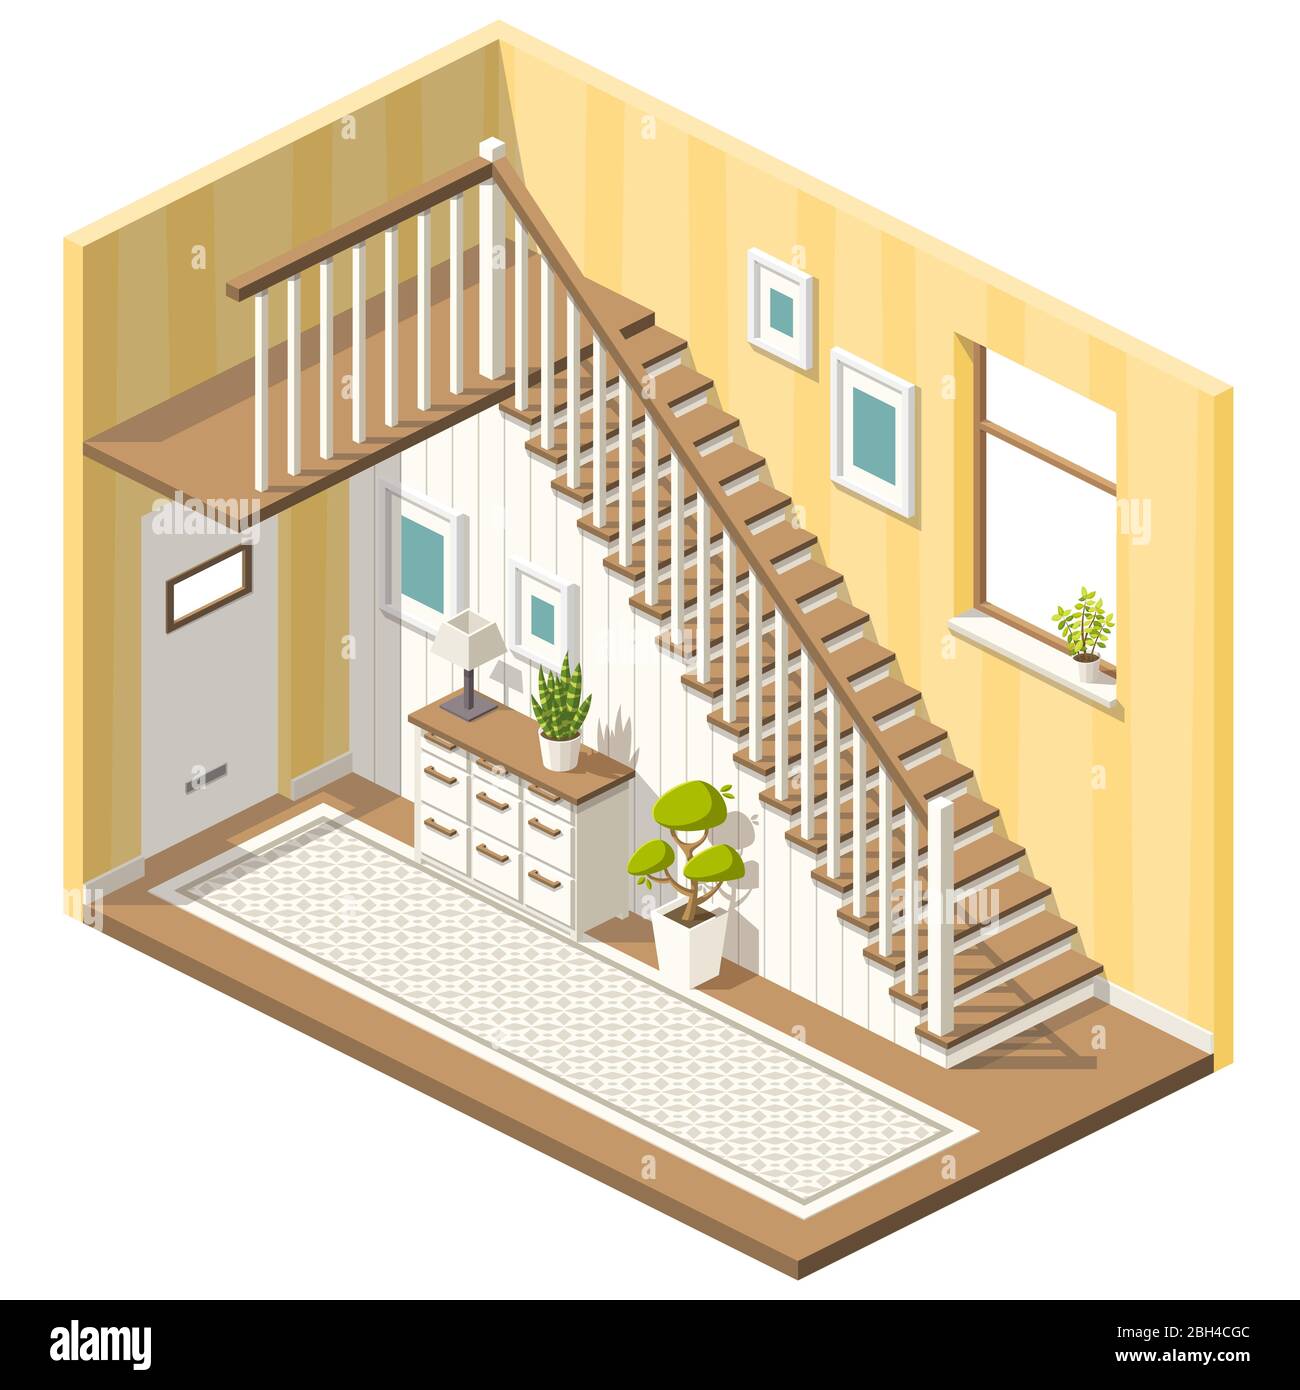 Isometrische Halle mit Treppe und Möbeln. Vektorgrafik mit separaten Ebenen. Stock Vektor